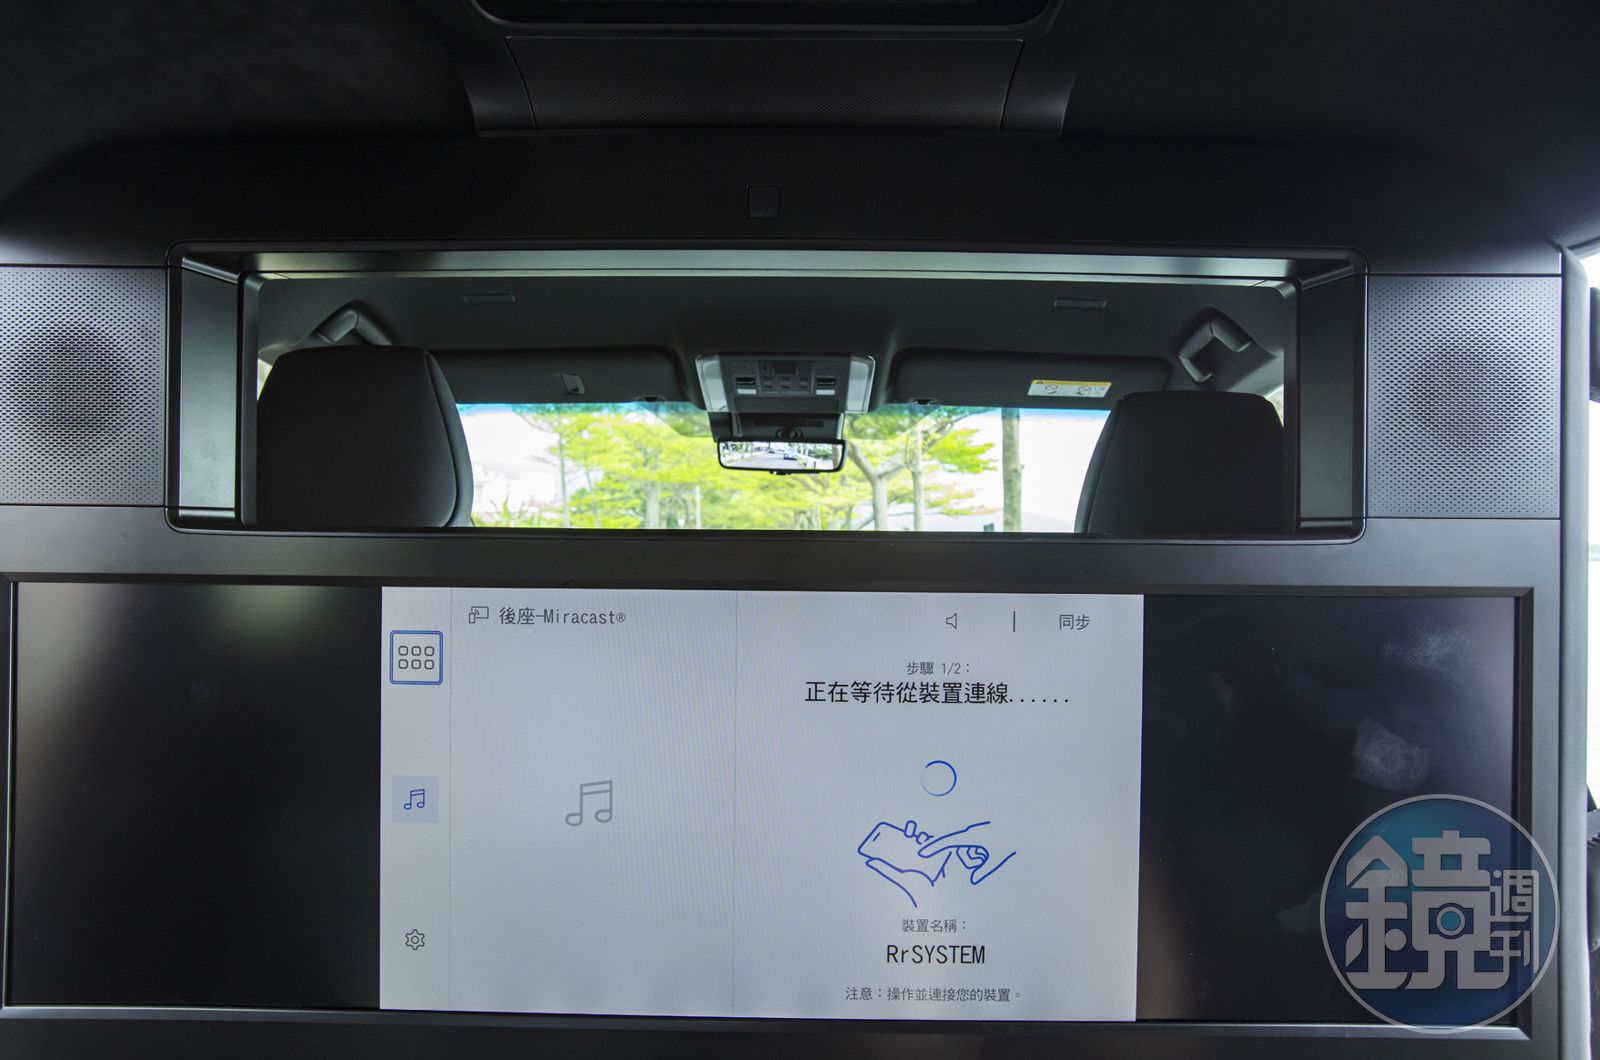 四人座車型以尊榮私密隔屏（透明狀態）區隔前後車艙，全新 48 吋寬螢幕則提供乘客視覺饗宴。